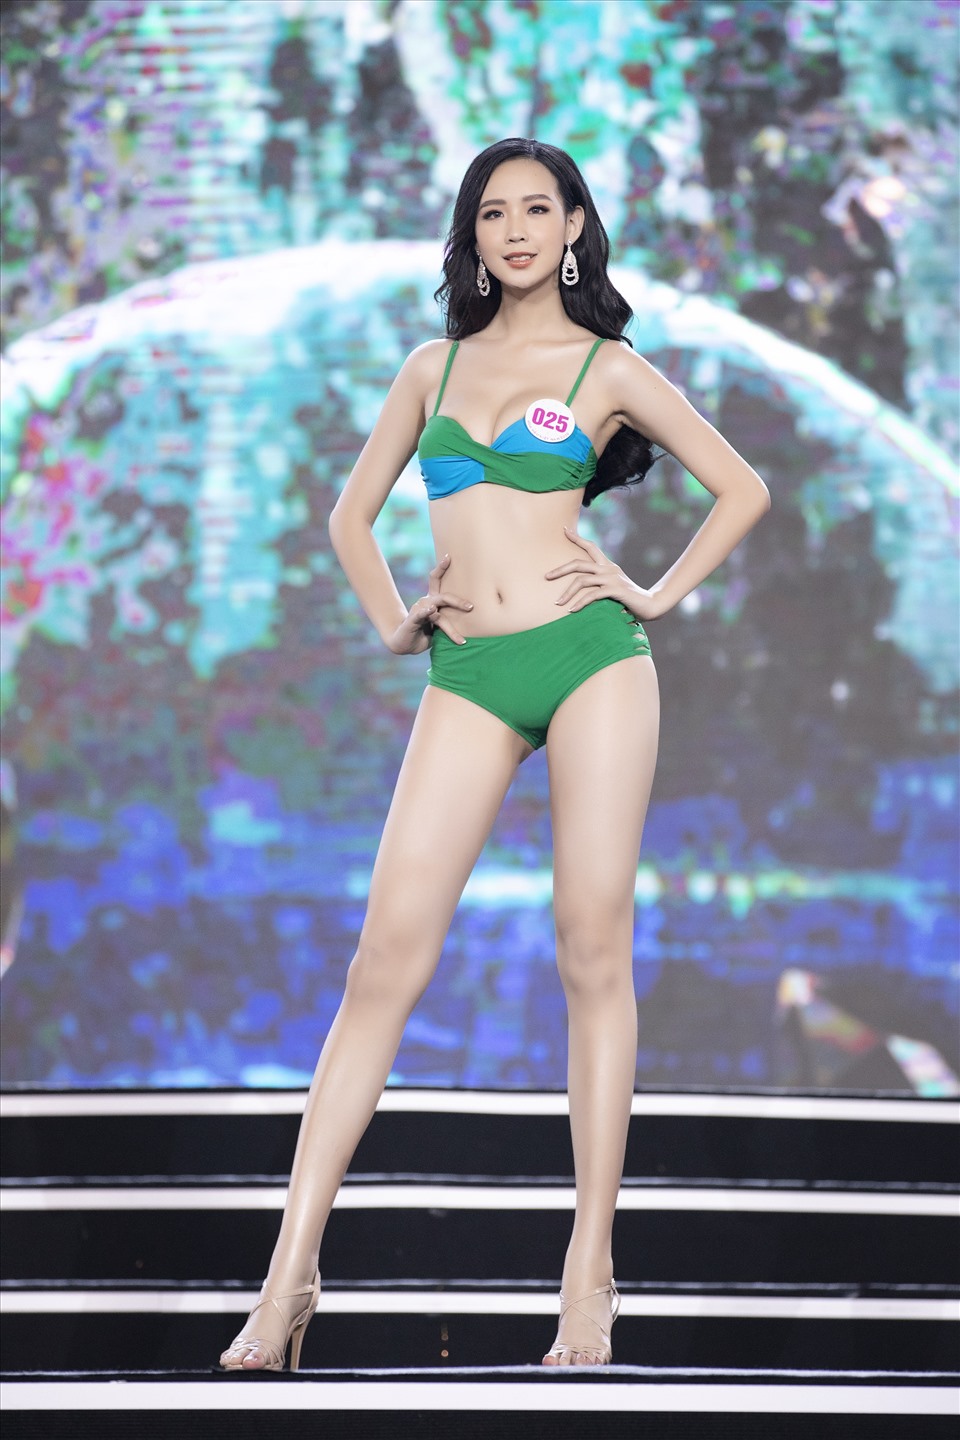 Trong đêm bán kết Hoa hậu Việt Nam 2020 vừa qua, Bảo Ngọc cũng nằm trong top những thí sinh nổi bật nhất. Mặc dù chưa có nhiều kinh nghiệm nhưng nữ sinh Cần Thơ đã làm chủ sân khấu và thể hiện các phần trình diễn khá tốt, không bị mắc lỗi catwalk. Ảnh: Kiếng Cận.